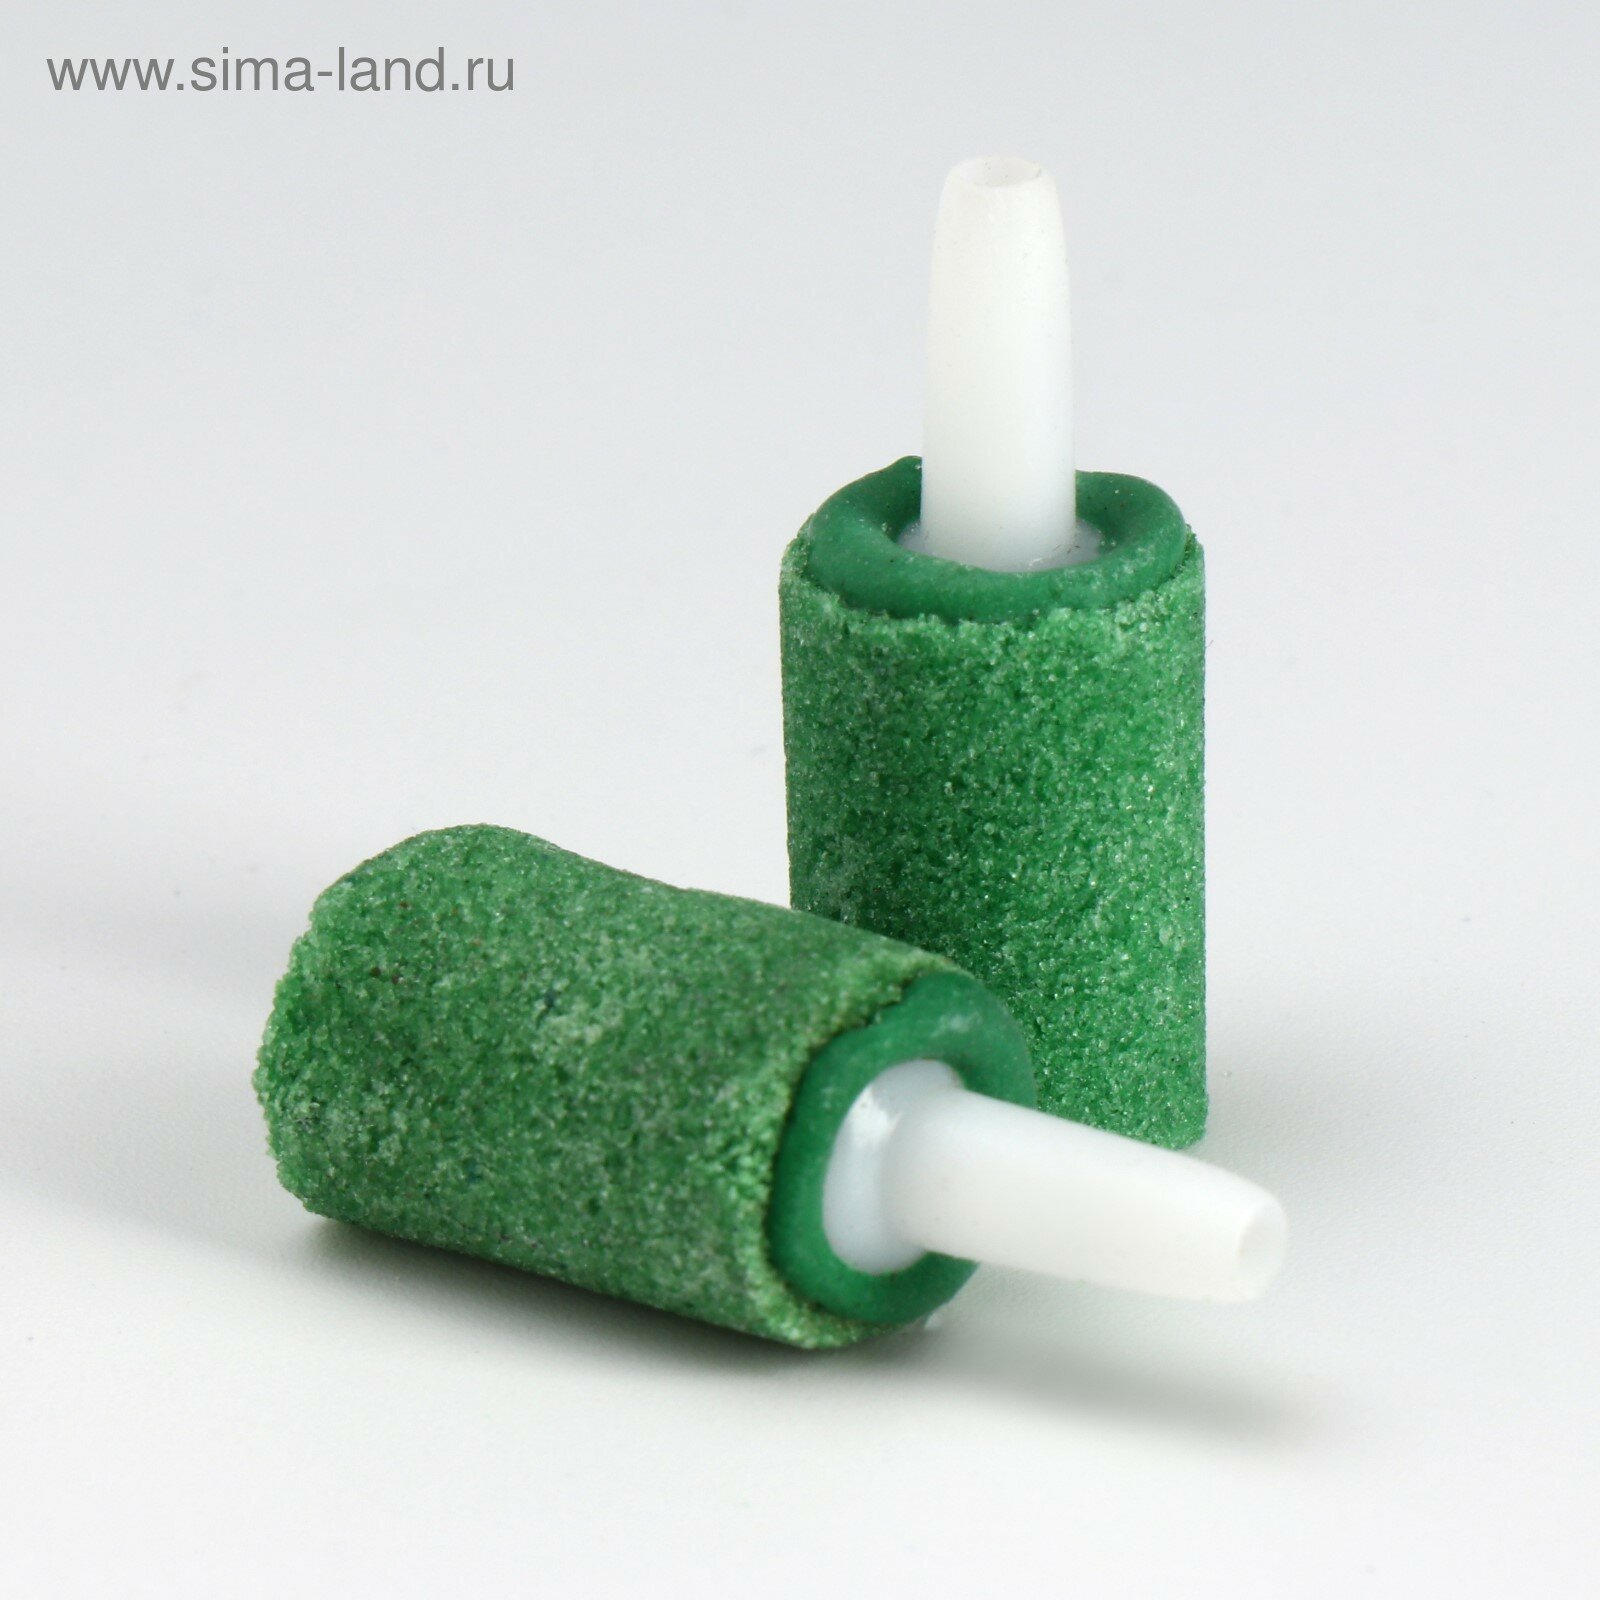 Распылитель-цилиндр 36 х 14 мм, зеленый (10шт.)